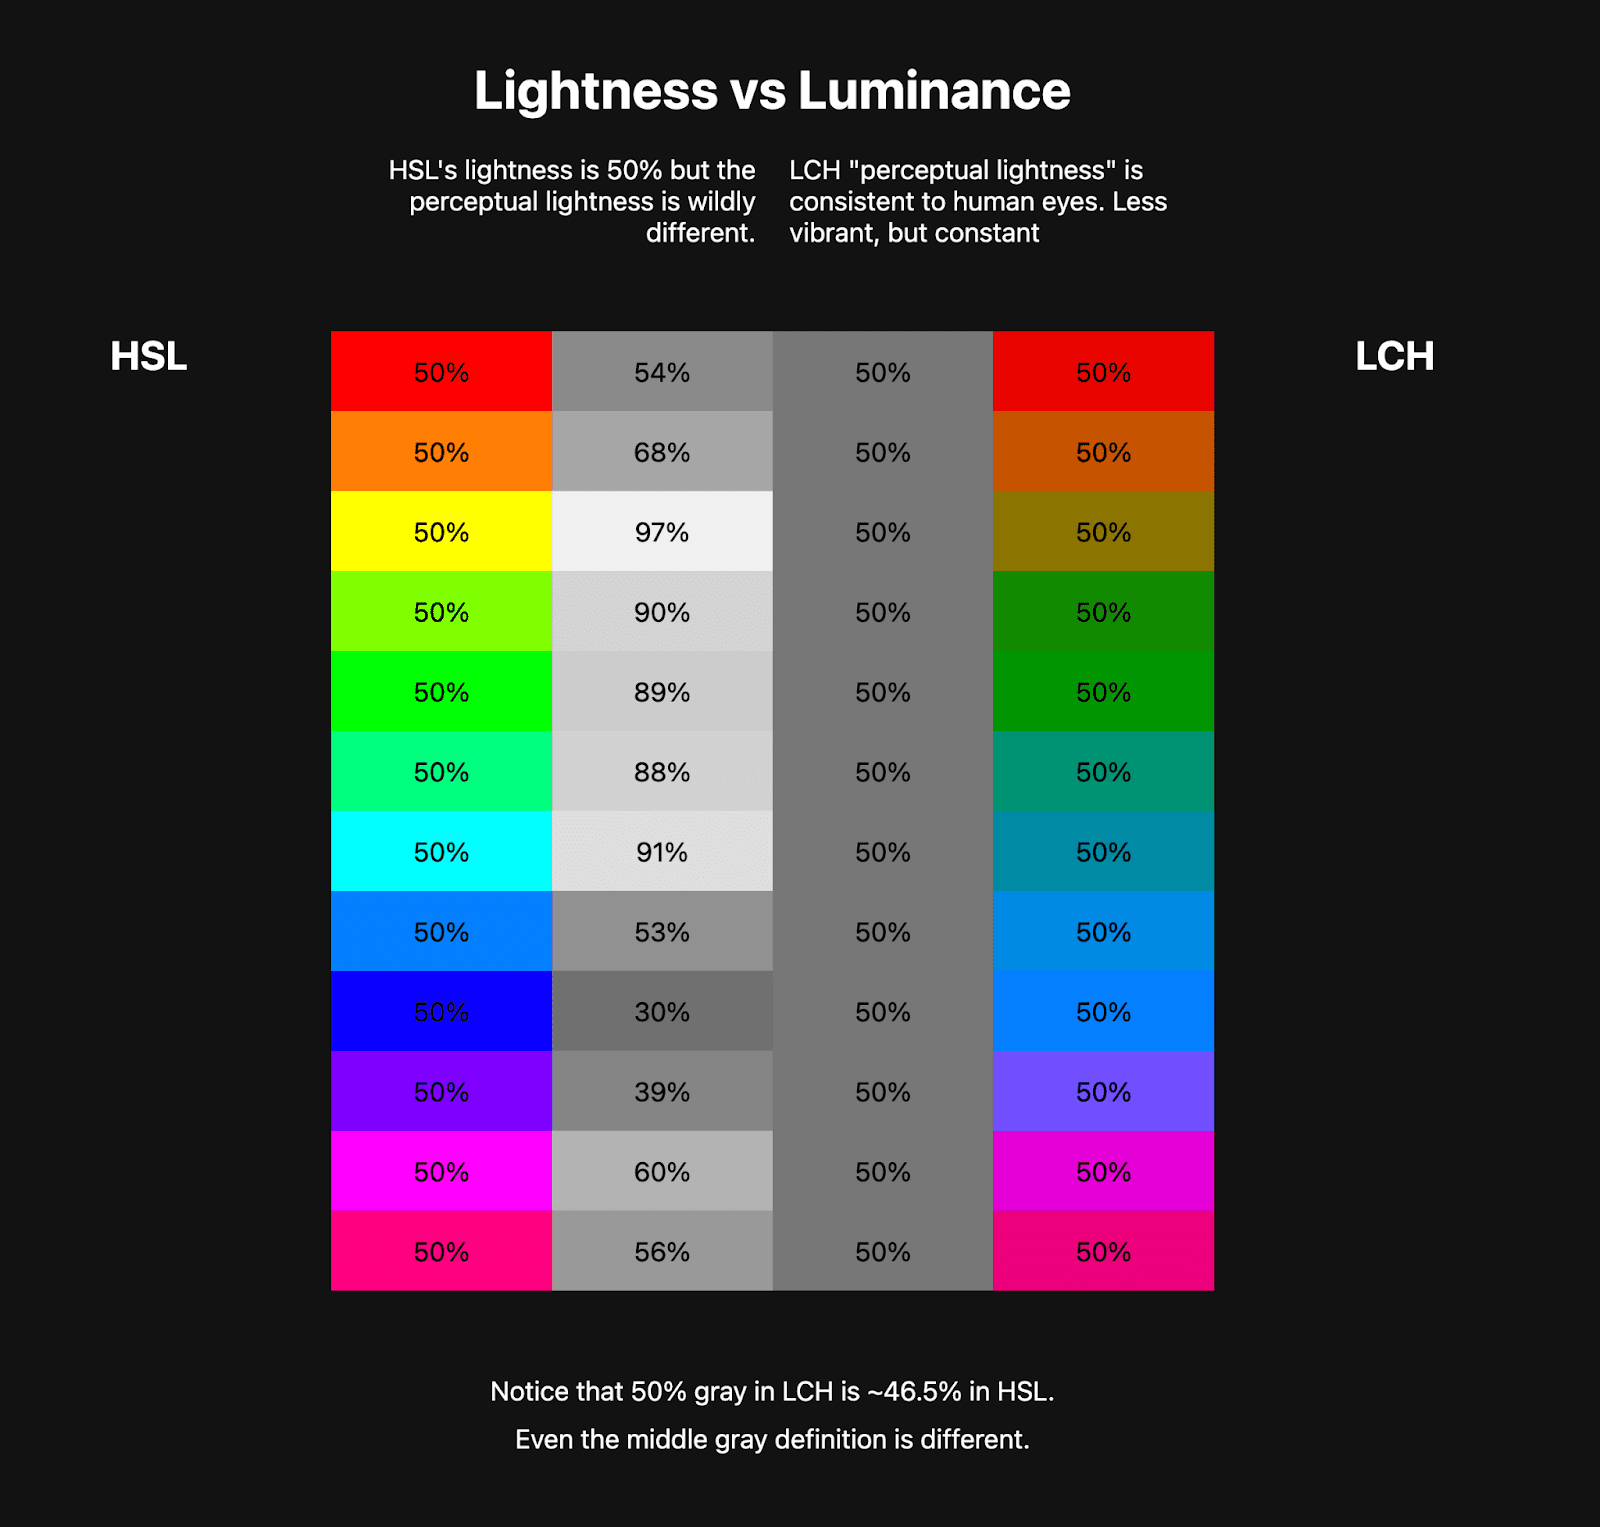 兩張並列的顏色表格。第一個表格顯示了至少 10 種顏色的 HSL 彩虹，旁邊有代表這些 HSL 色彩亮度的灰階色彩。第二個表格顯示 LCH 彩虹，較不鮮豔，但旁邊的灰階顏色保持一致。說明 LCH 如何具有健康的持續亮度值，但 HSL 未提供。